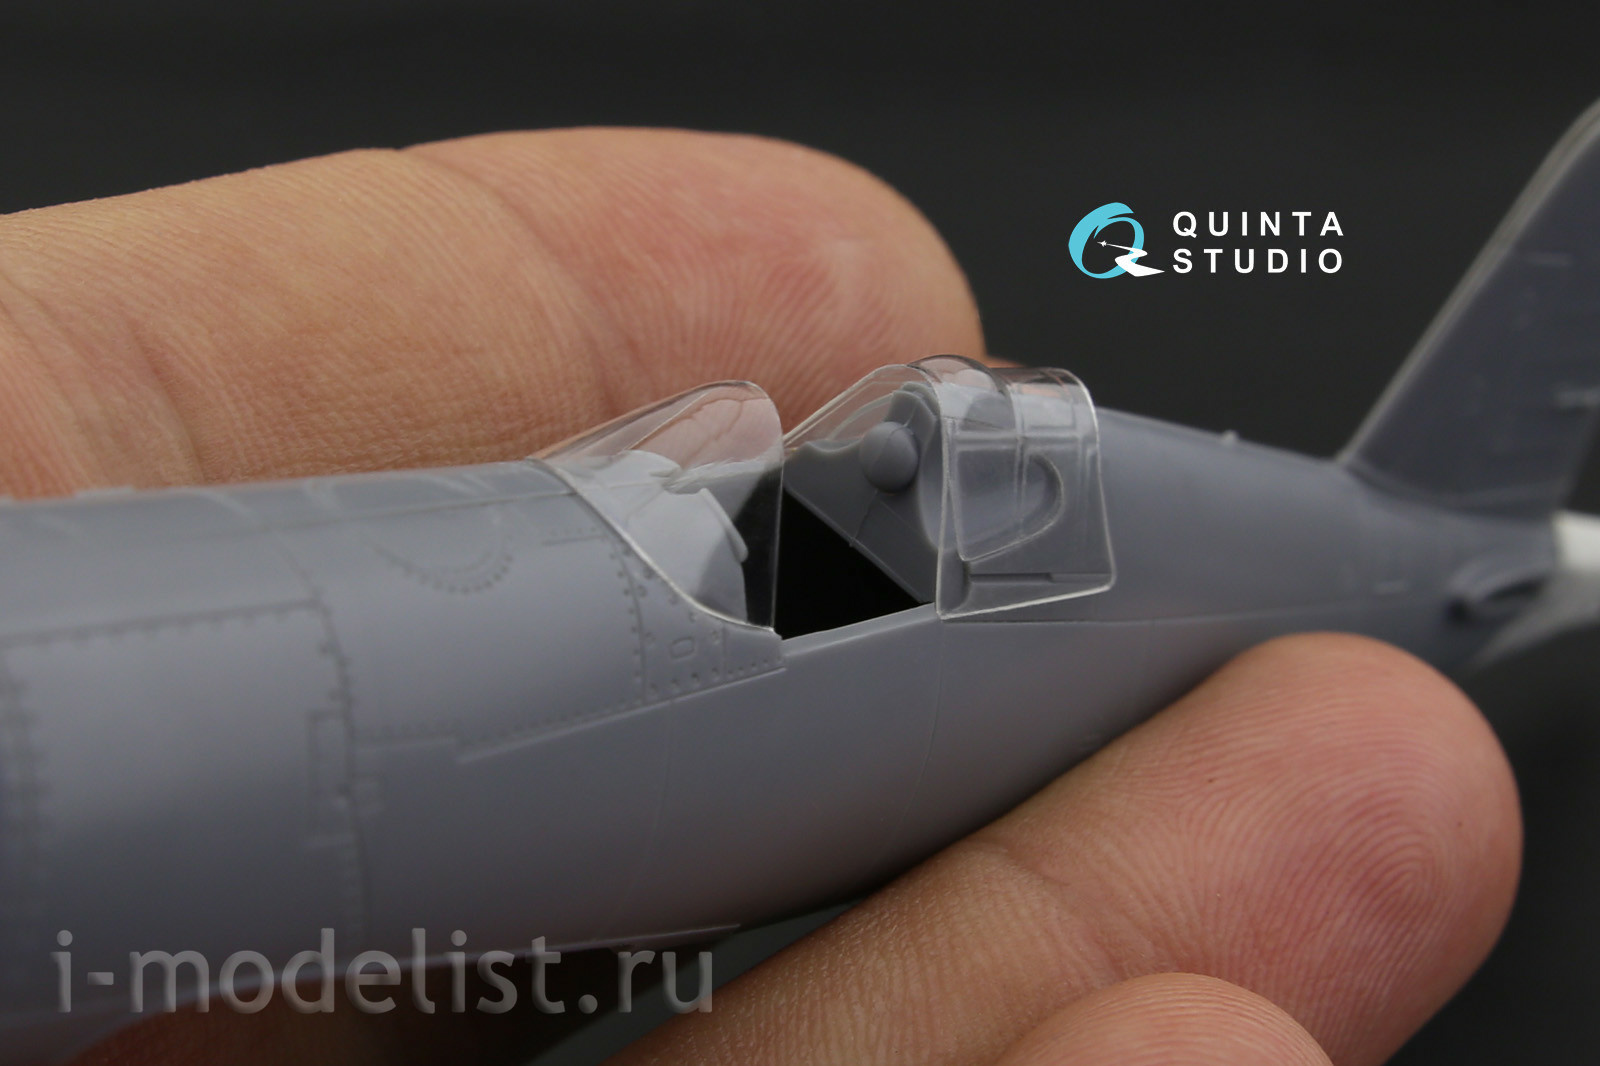 QC72023 Quinta Studio 1/72 Набор остекления для модели F4U-1 Corsair (Bird cage) (для модели Tamiya)